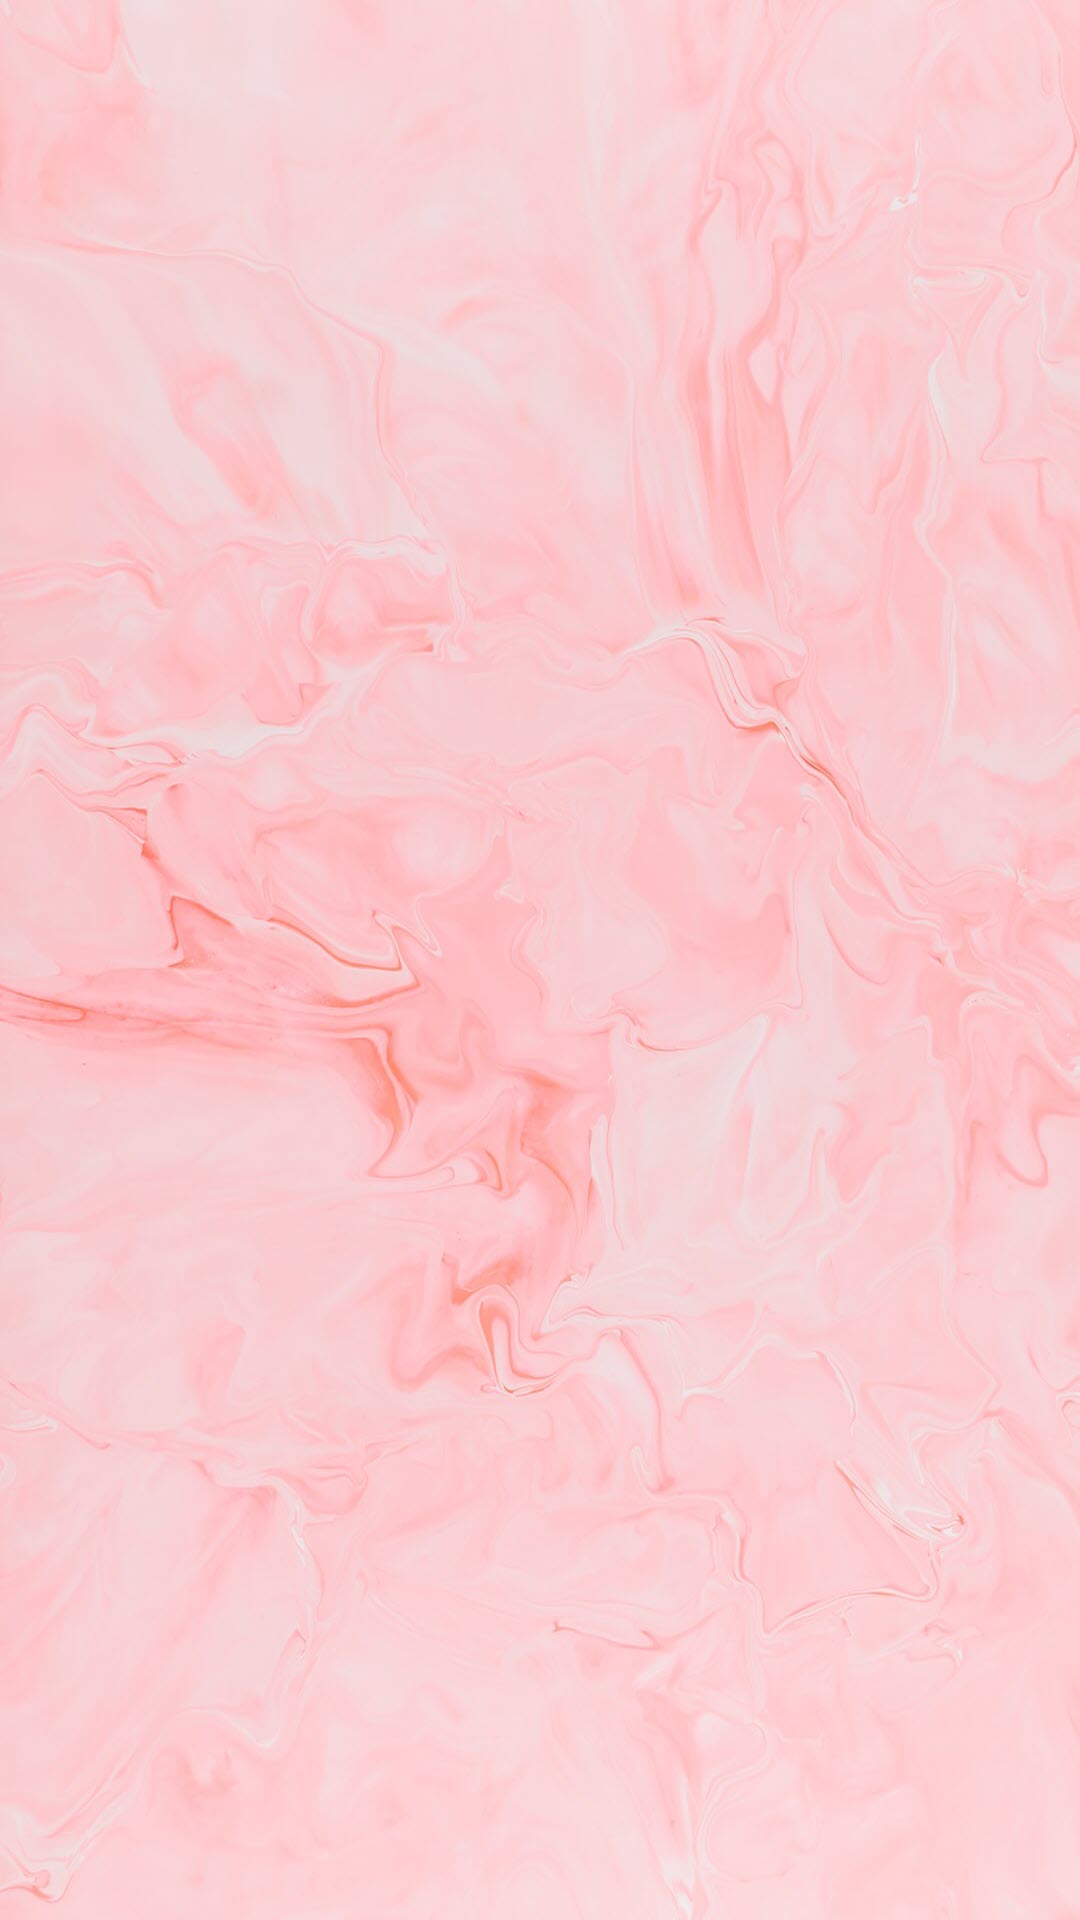 Hình nền màu hồng pastel: Cùng khám phá một thế giới màu hồng nhẹ nhàng và dịu dàng với hình nền màu hồng pastel. Ảnh đẹp này sẽ tạo nên không gian làm việc hay thư giãn hoàn hảo cho bạn.